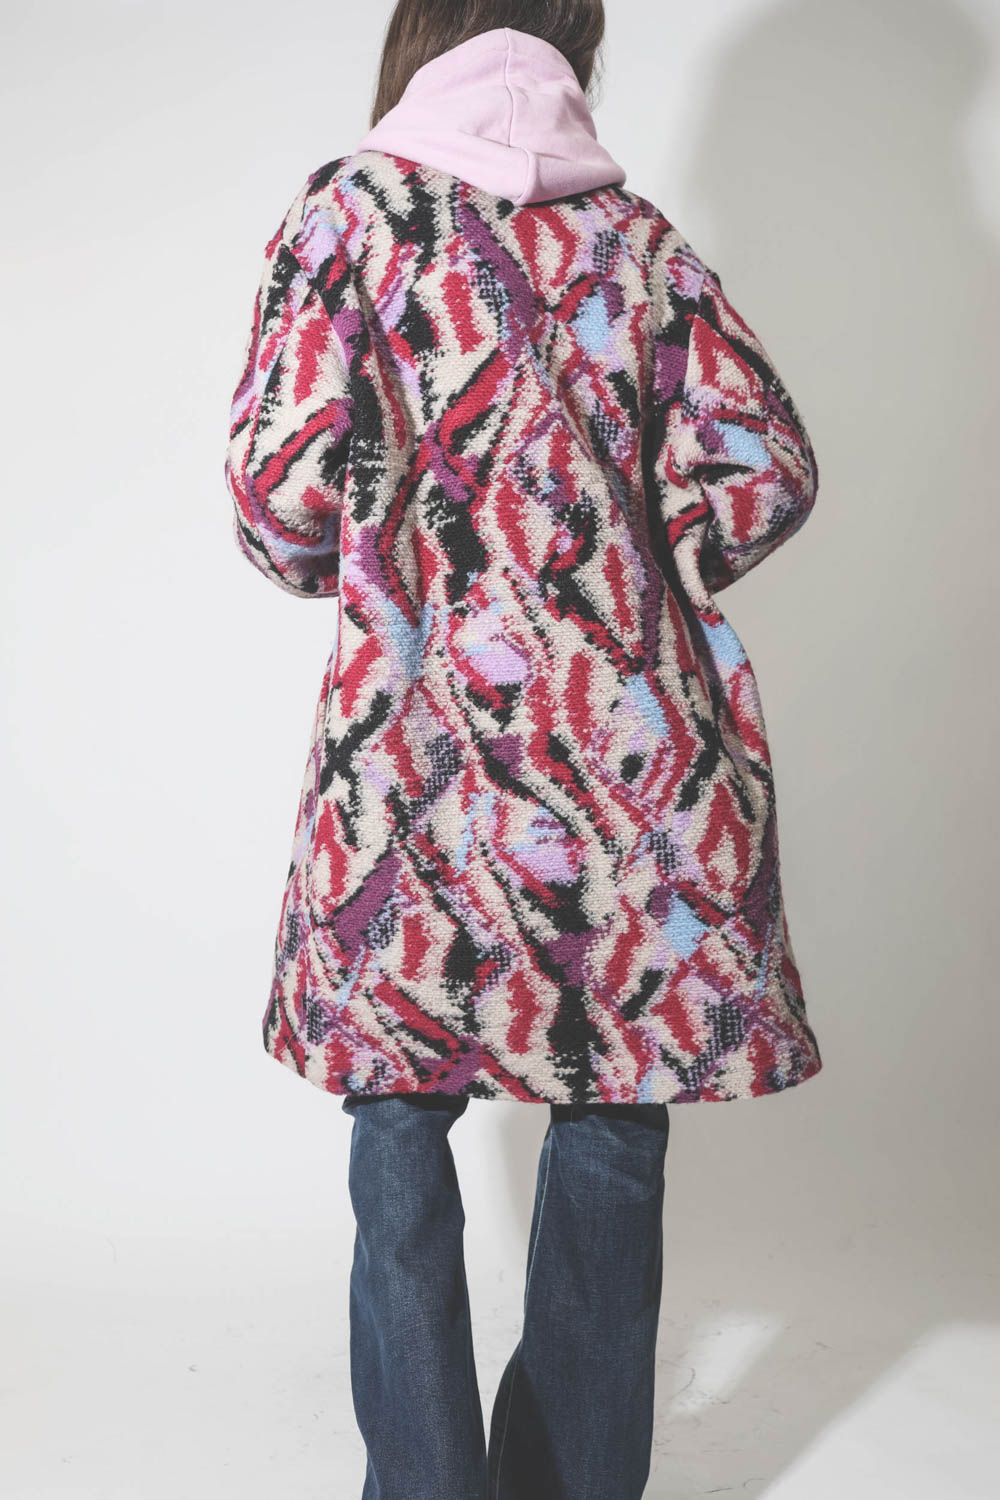 Manteau imprimé jacquard rose fond écru Sharon Marant Etoile. Porté avec un jean évasé.